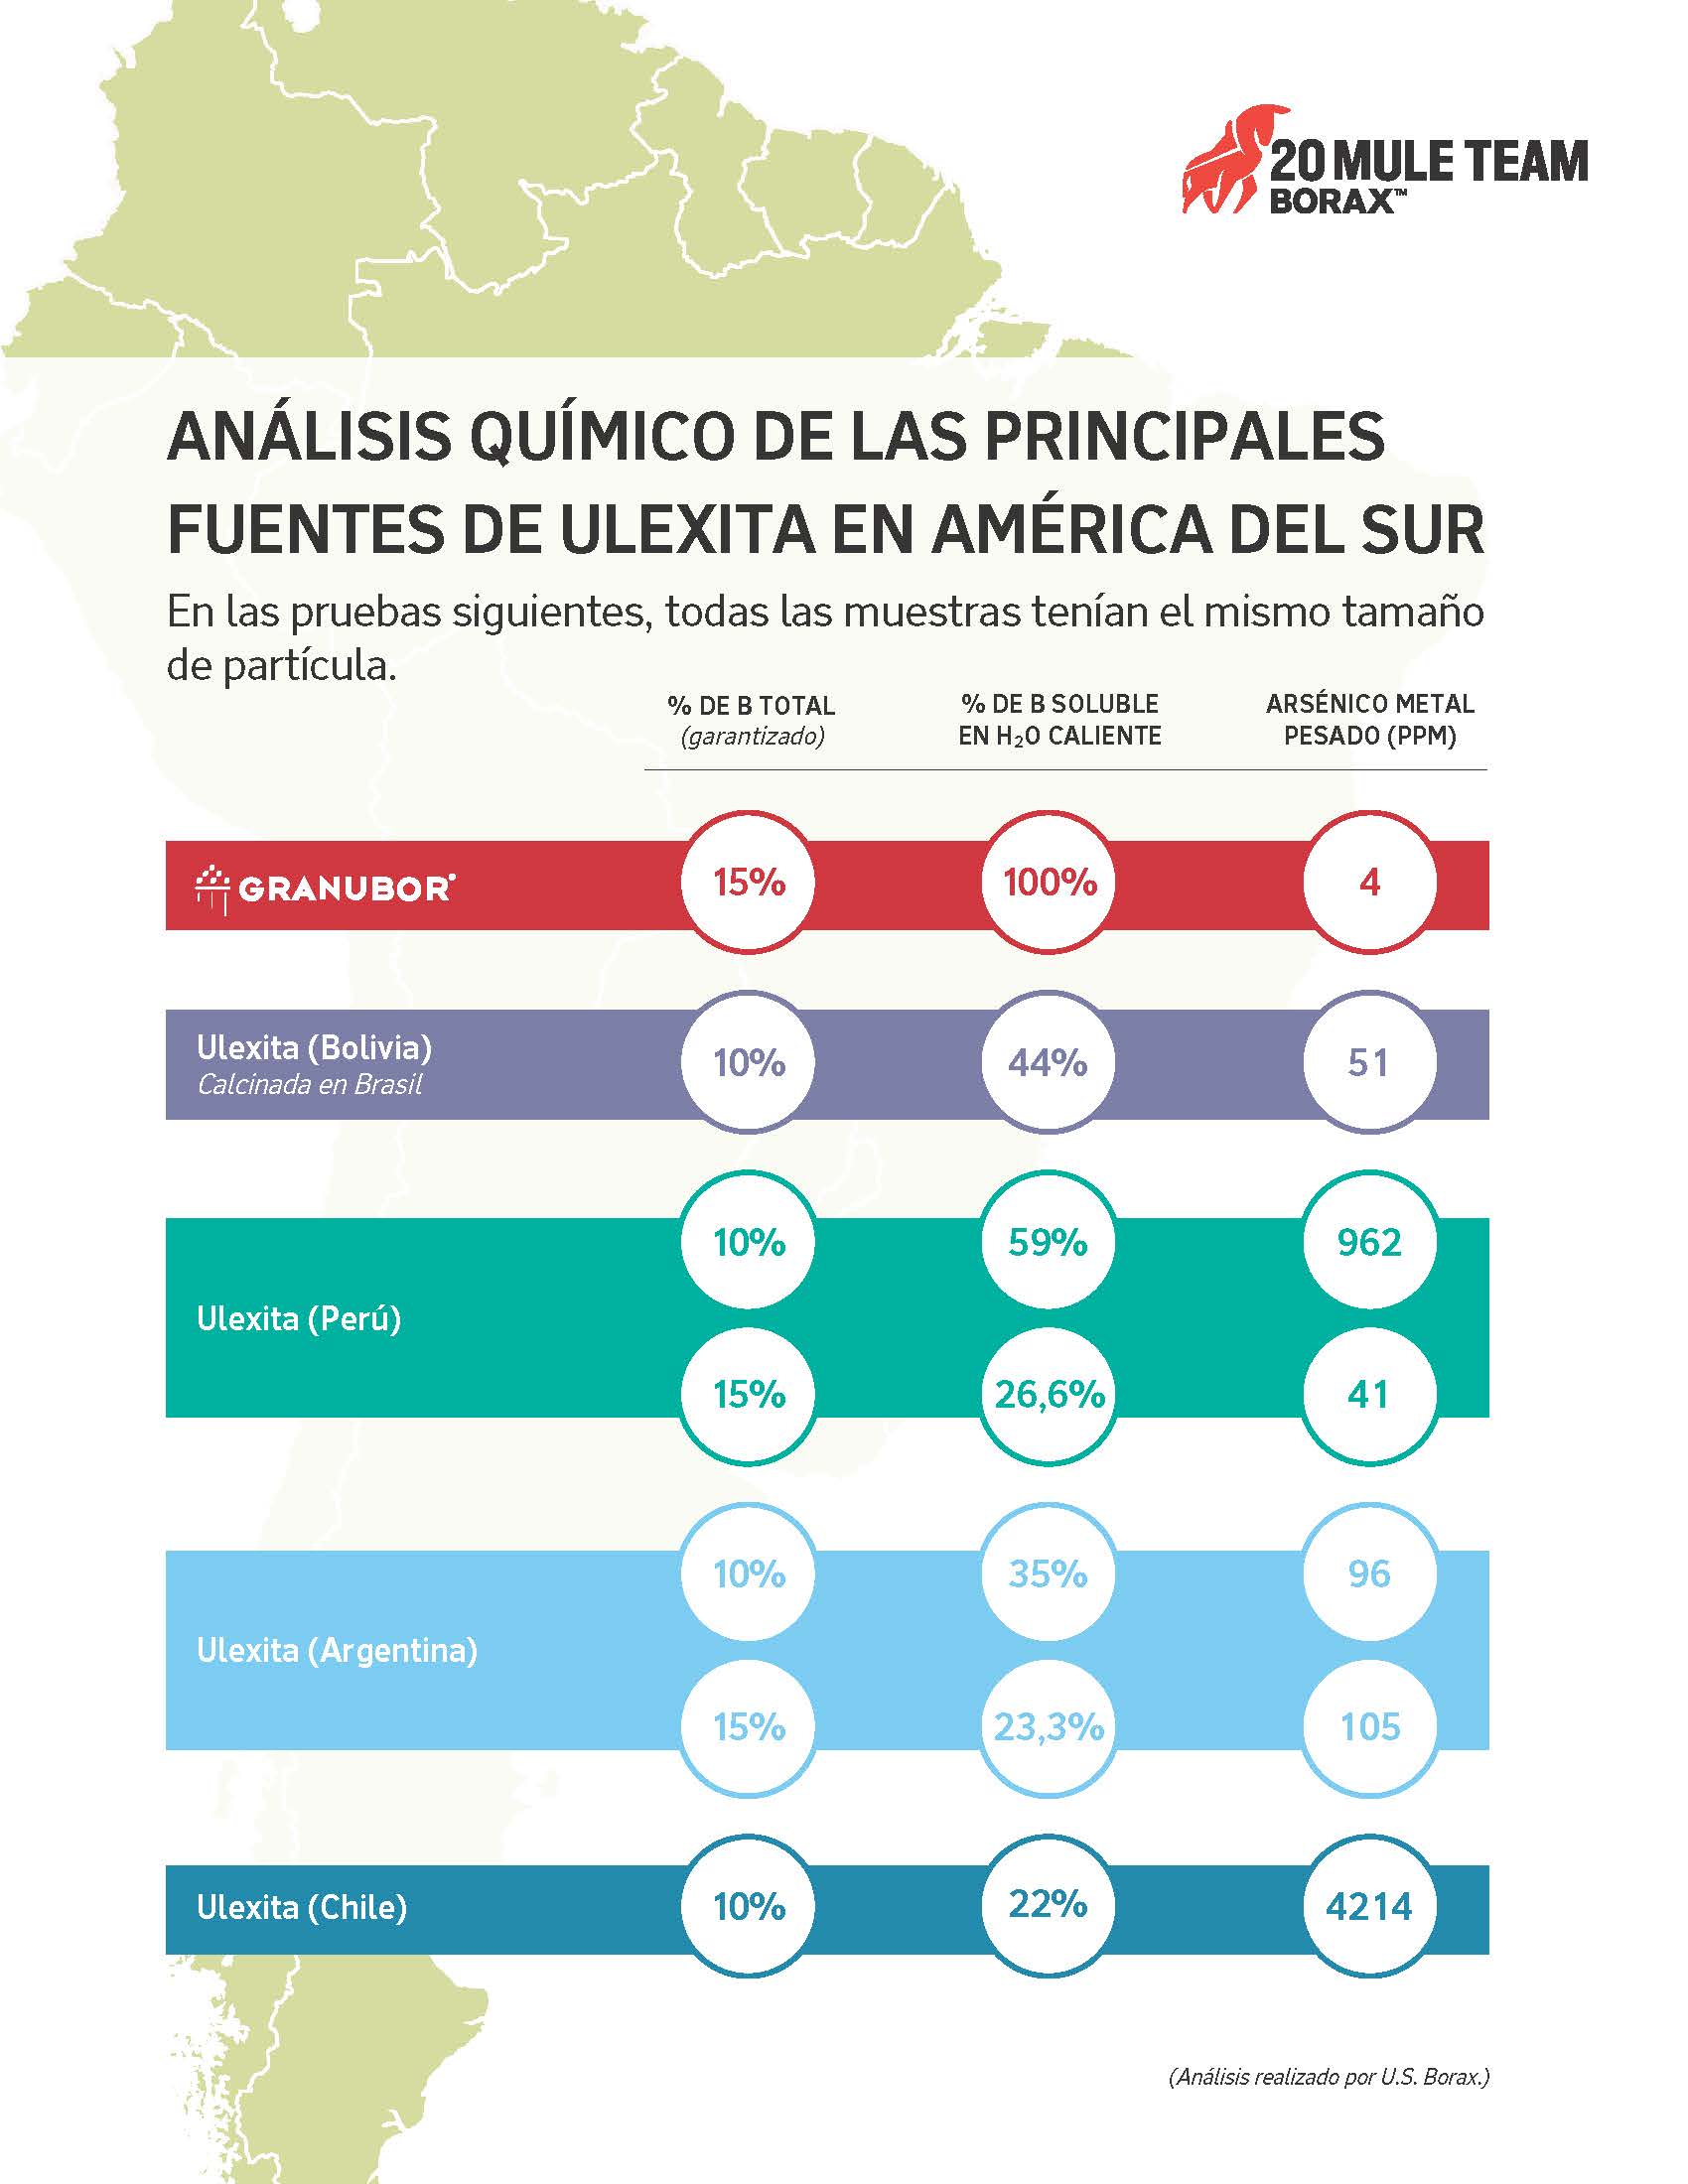 Análisis químico de ulexitas sudamericanas de Bolivia, Argentina, Perú y Chile comparadas con Granubor de U.S. Borax.